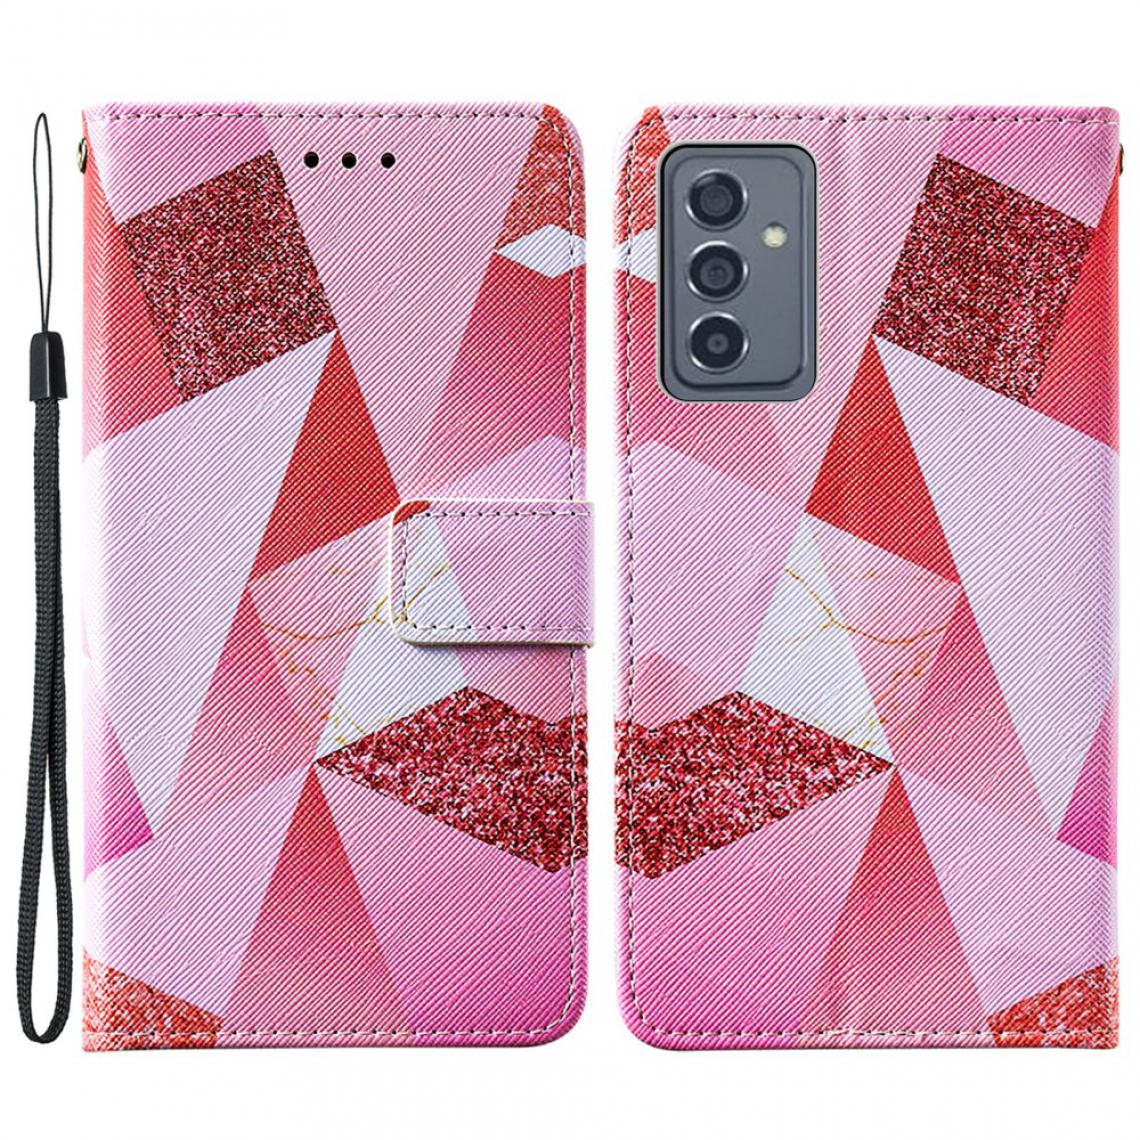 Other - Etui en PU Impression de motifs de texture croisée avec support Losange rose pour votre Samsung Galaxy A82 5G - Coque, étui smartphone